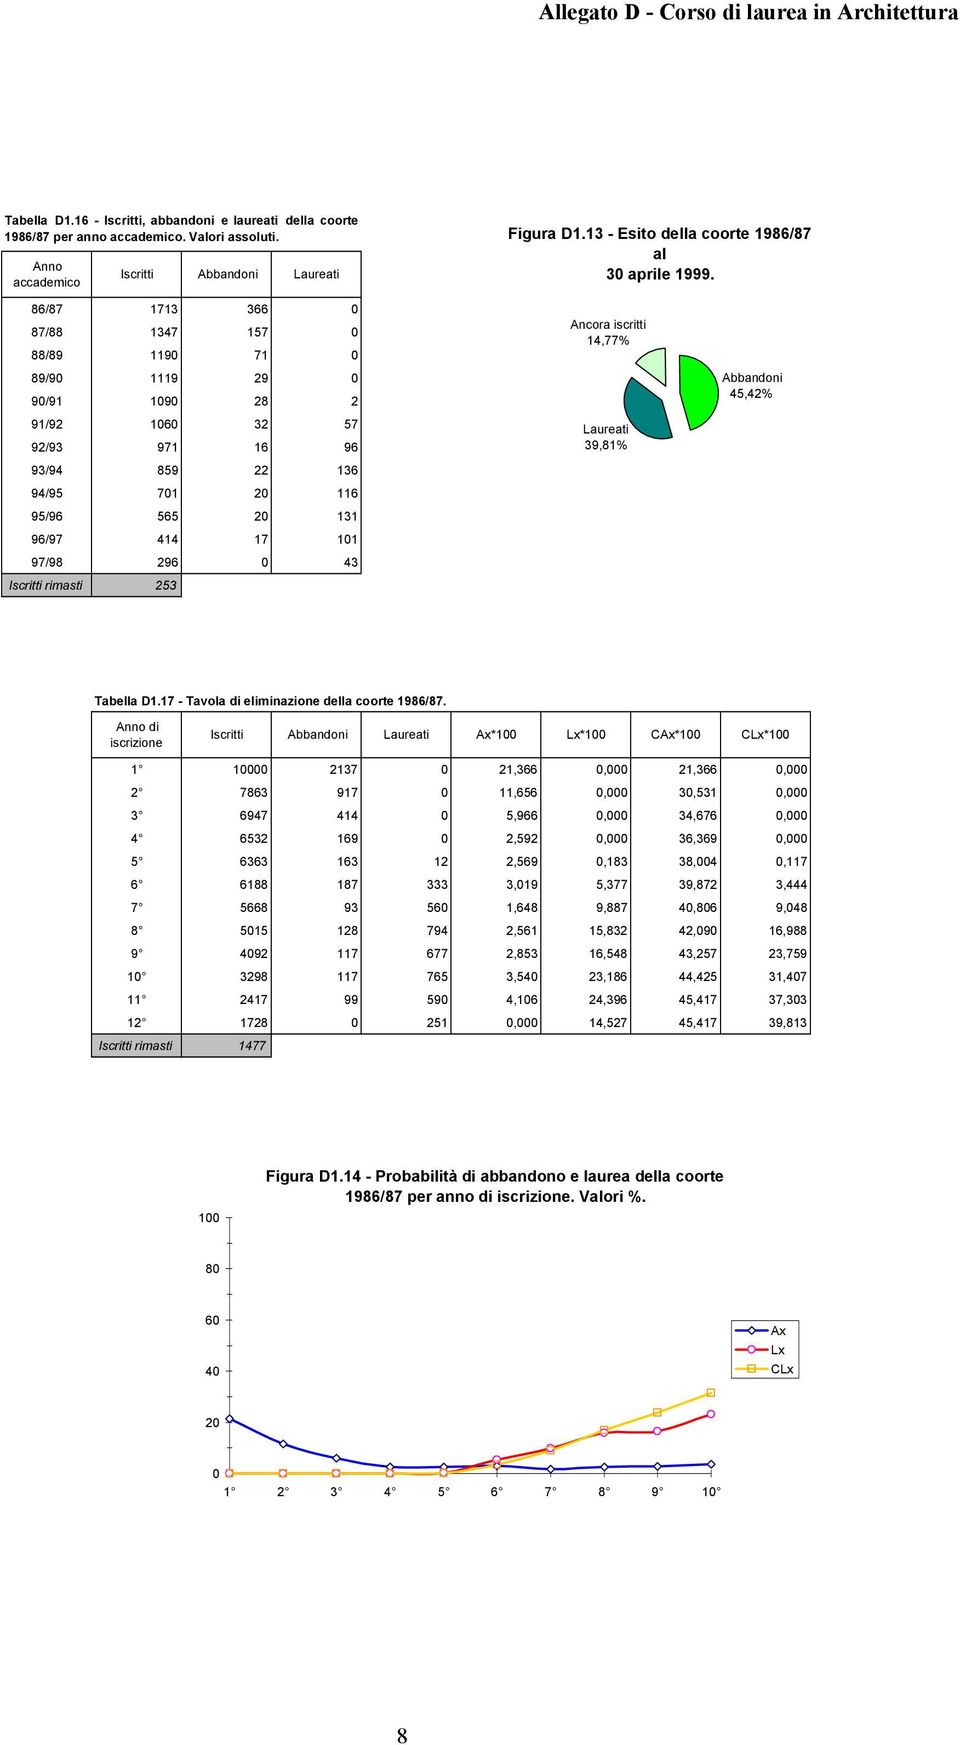 Ancora iscritti 14,77% Laureati 39,81% 45,42% Tabella D1.17 - Tavola di eliminazione della coorte 1986/87.